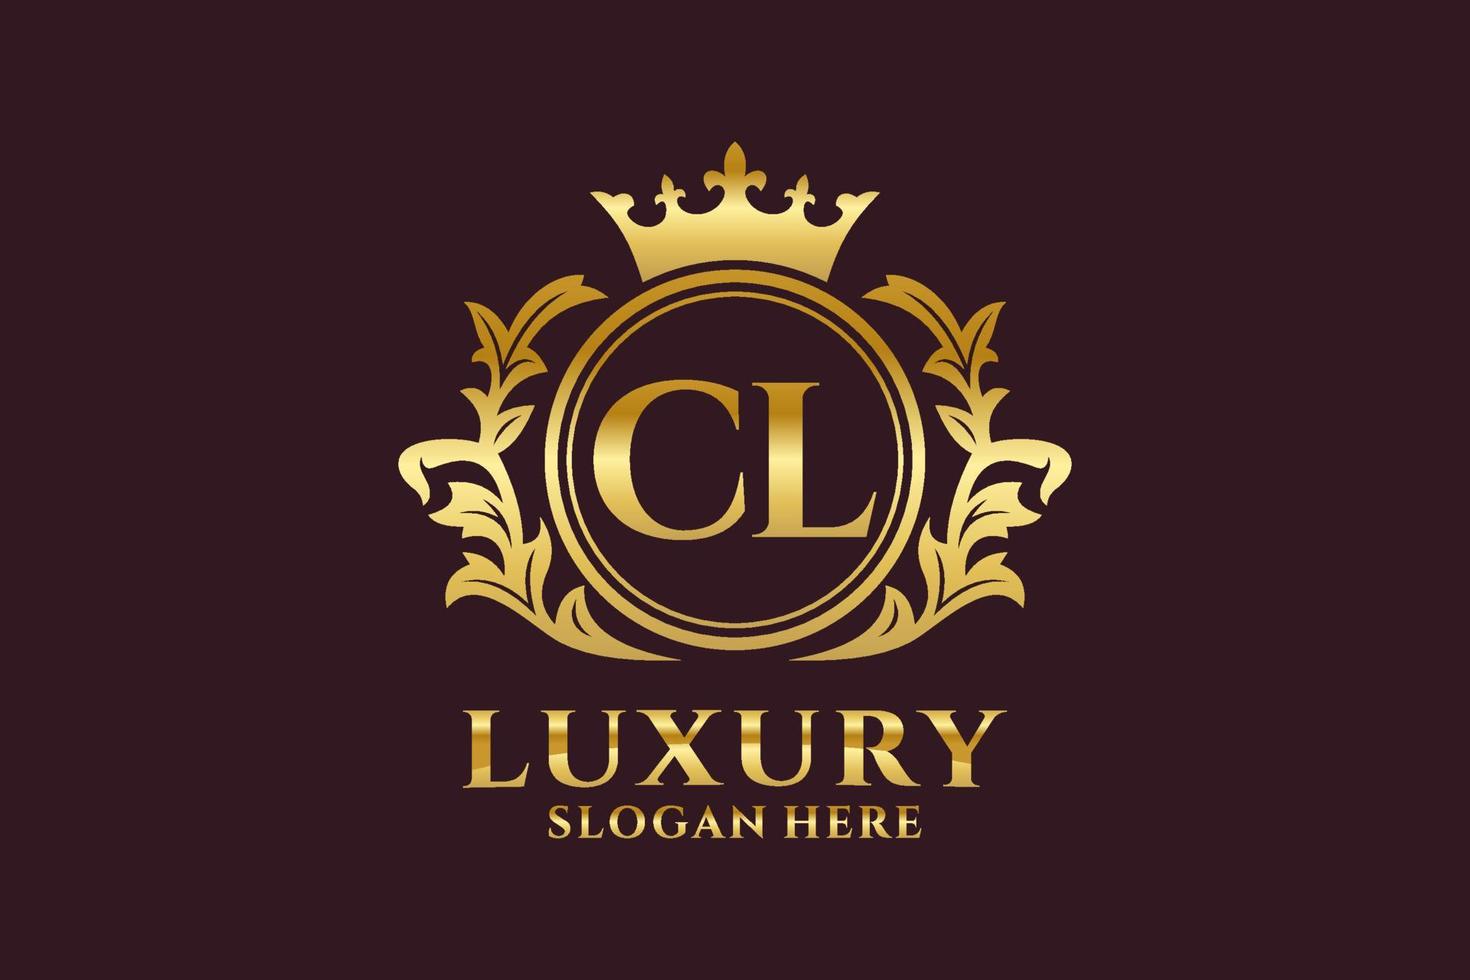 königliche Luxus-Logo-Vorlage mit anfänglichem cl-Buchstaben in Vektorgrafiken für luxuriöse Branding-Projekte und andere Vektorillustrationen. vektor